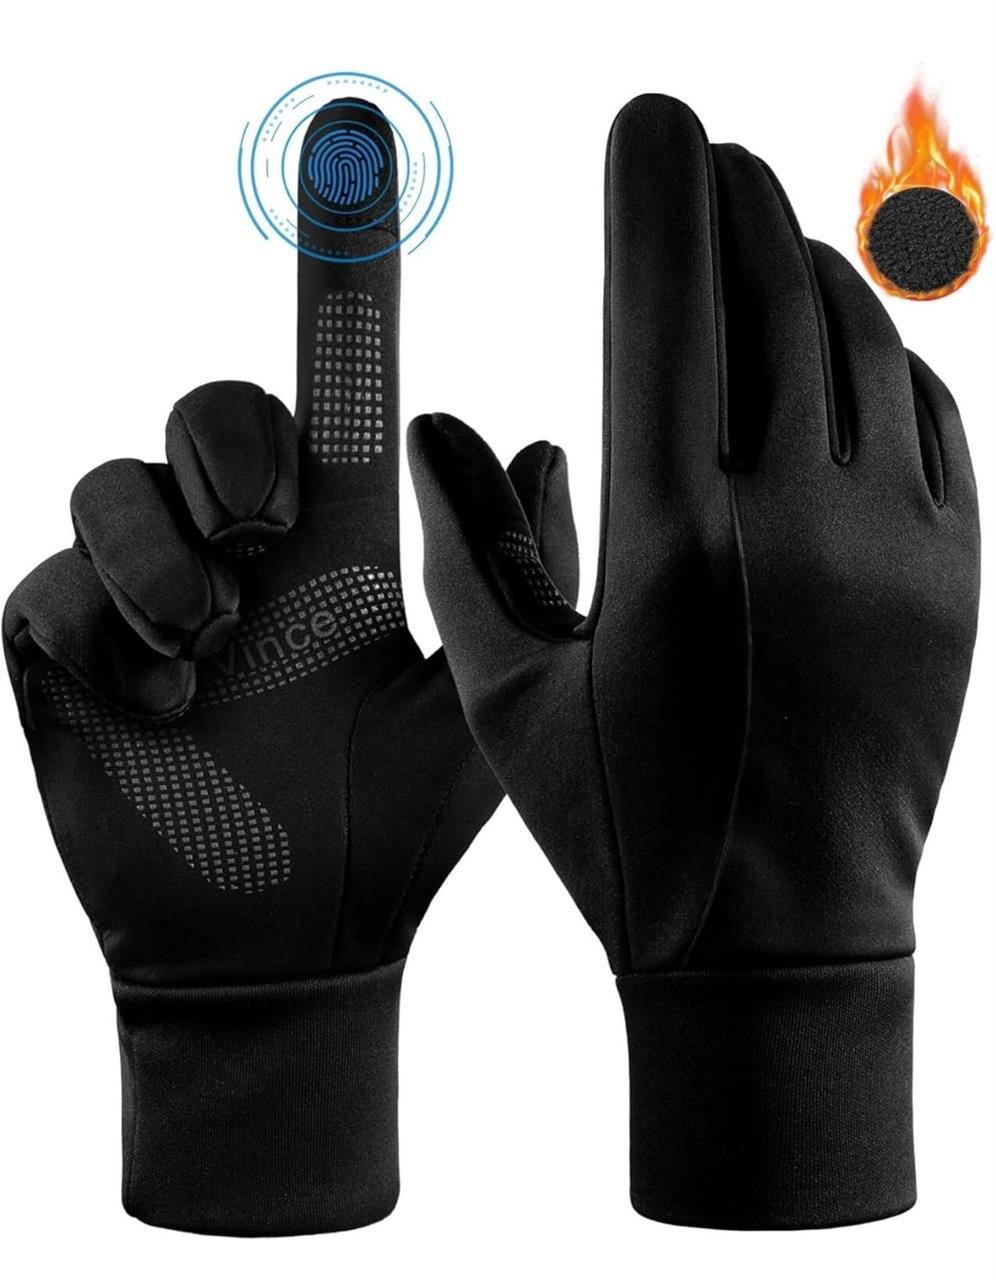 ($25) Winter Gloves Men Women Warm: Touch